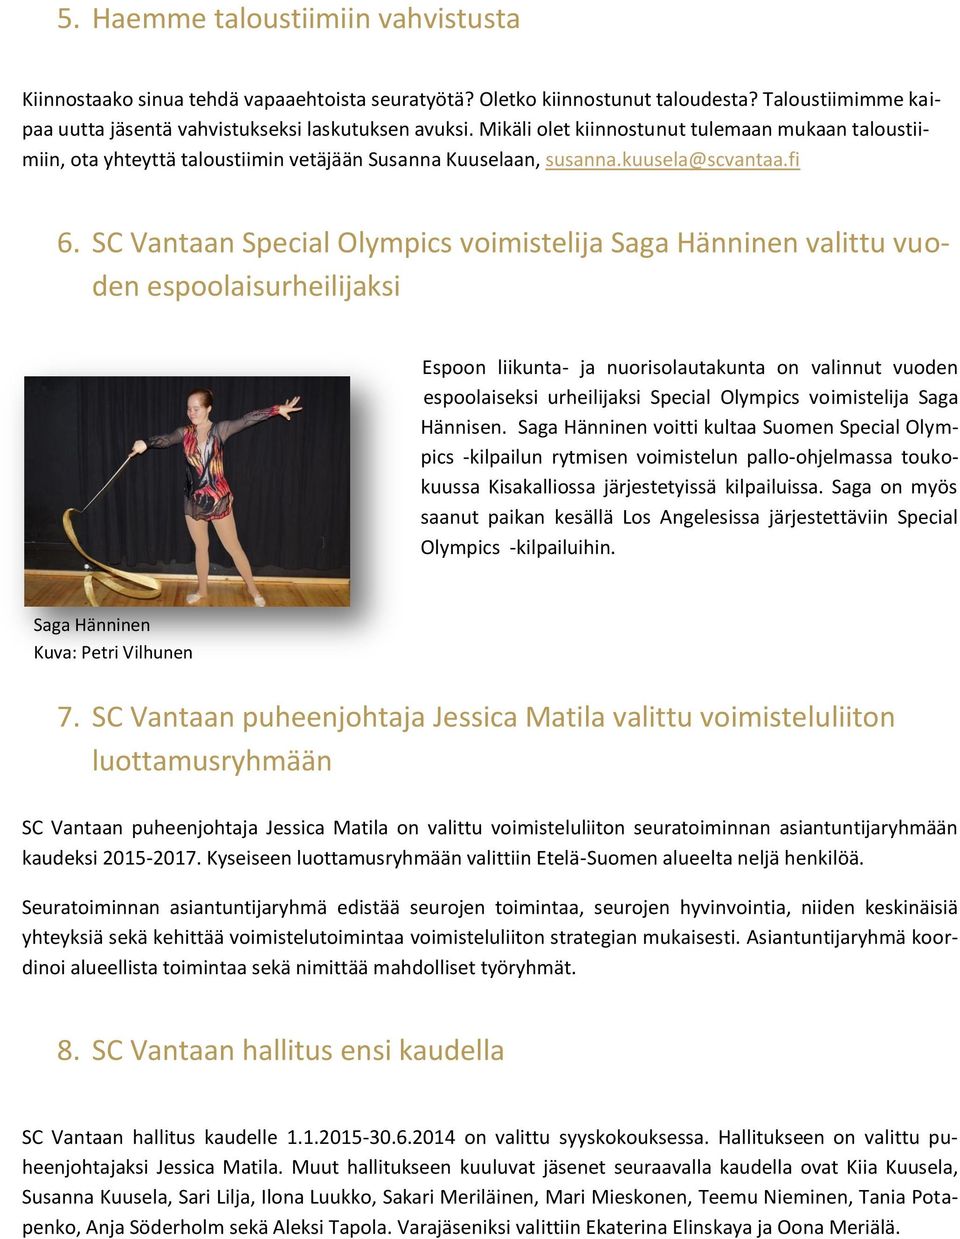 SC Vantaan Special Olympics voimistelija Saga Hänninen valittu vuoden espoolaisurheilijaksi Espoon liikunta- ja nuorisolautakunta on valinnut vuoden espoolaiseksi urheilijaksi Special Olympics